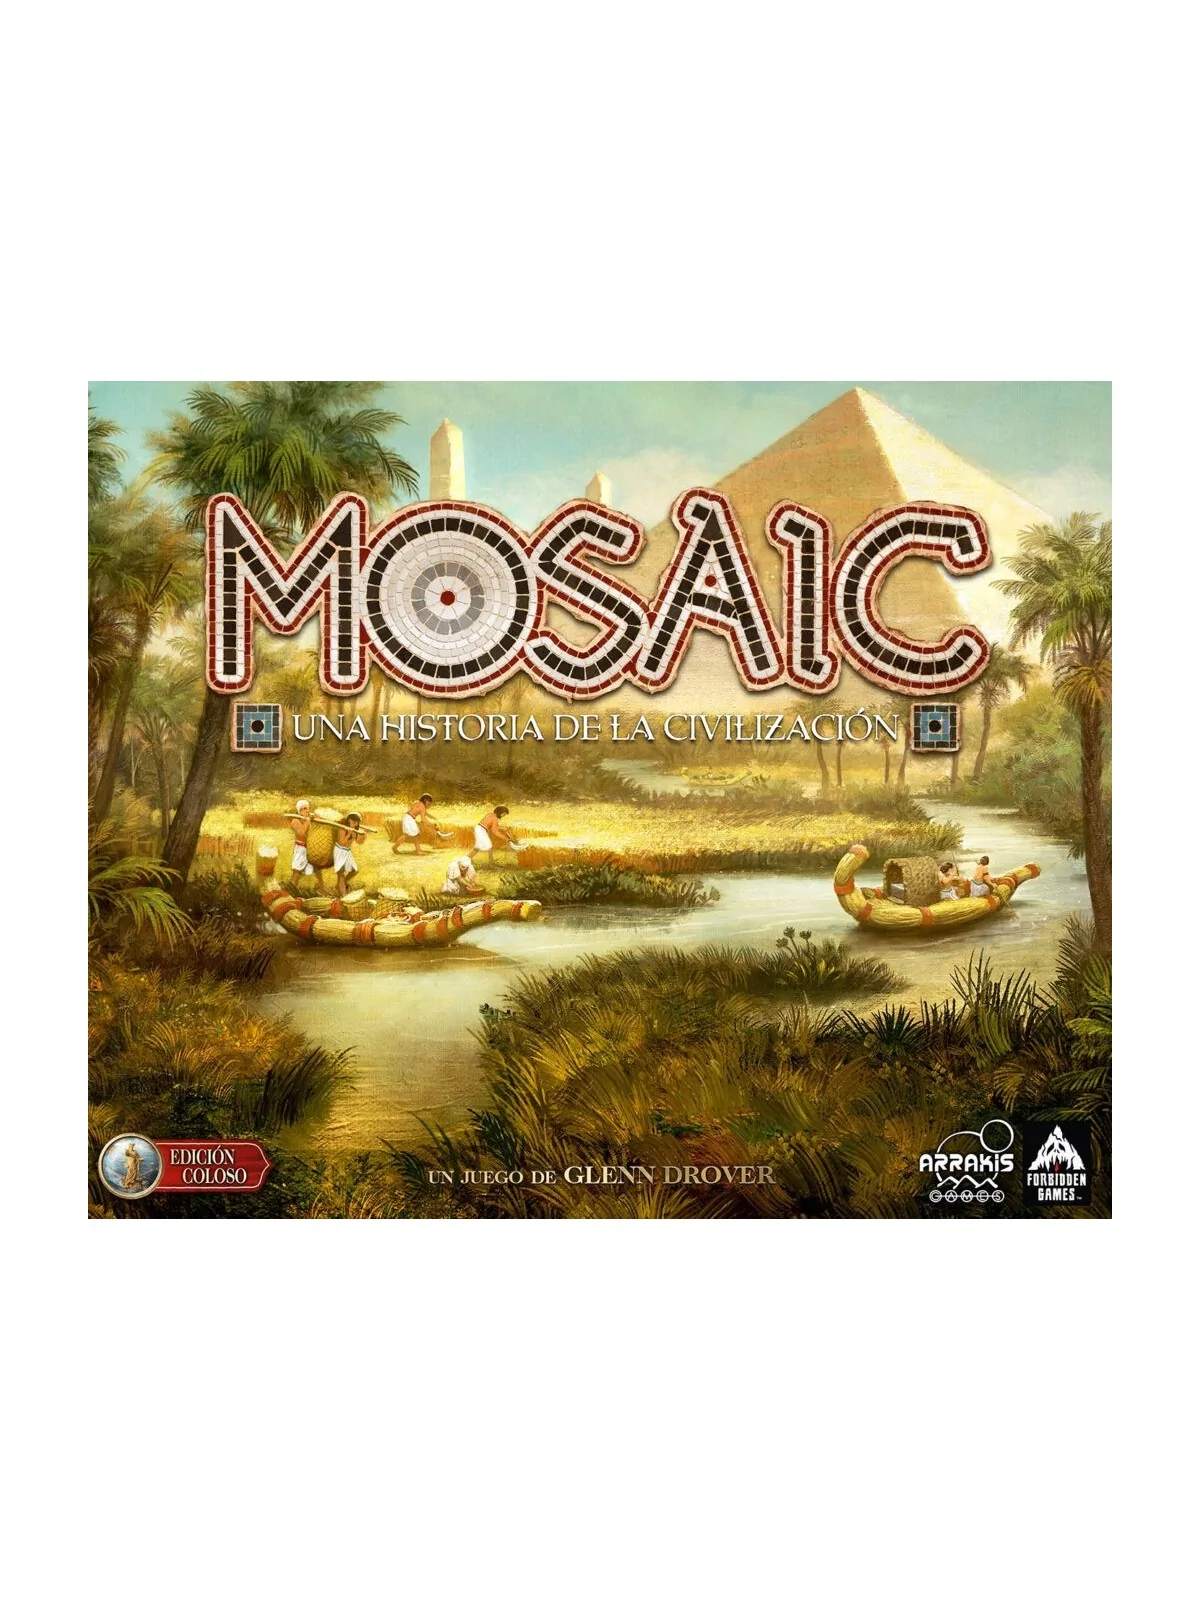 Comprar Mosaic: Edicion Coloso barato al mejor precio 175,45 € de Arra